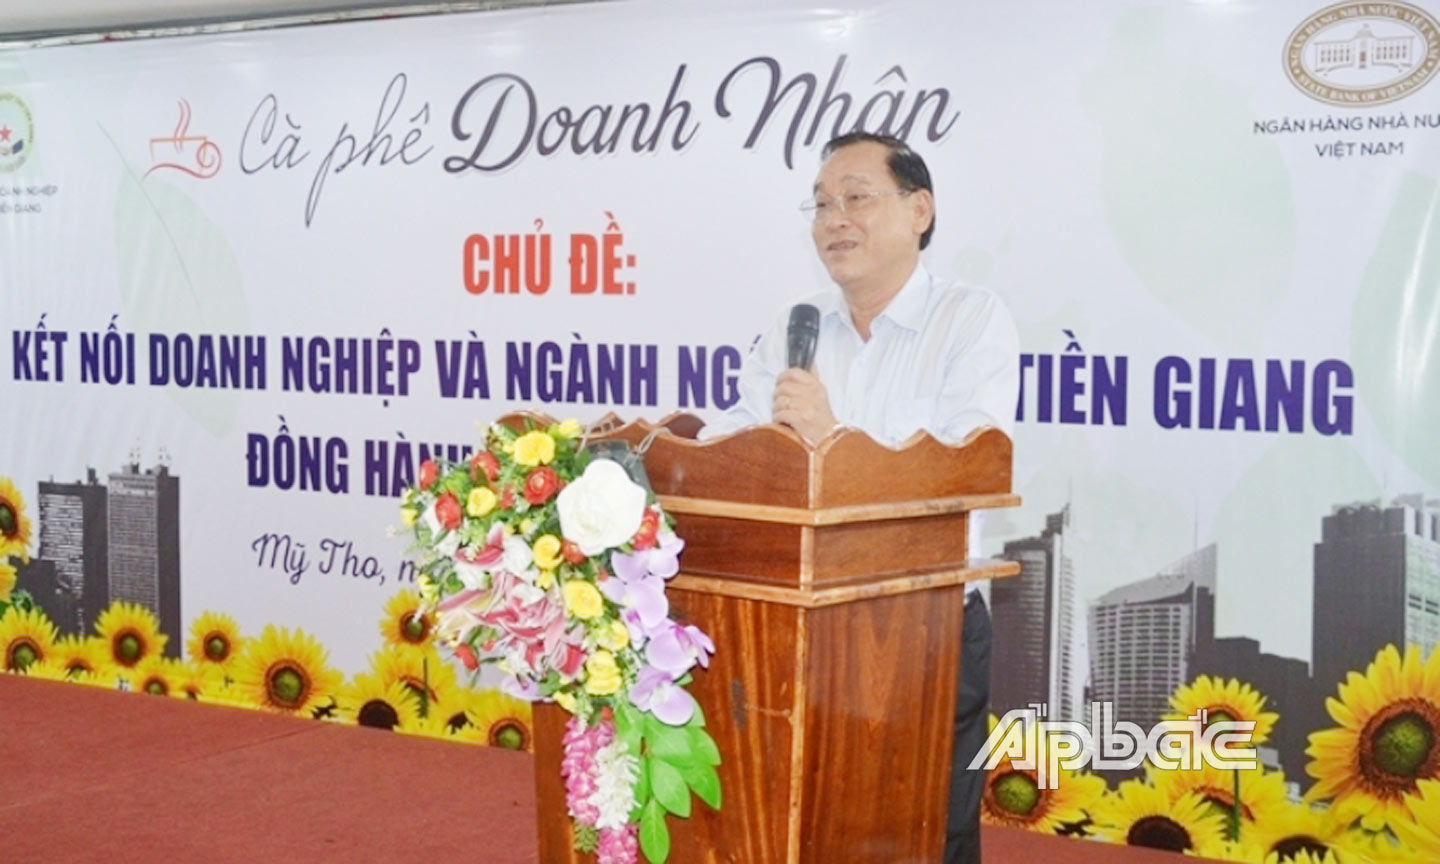 Phó Bí thư Tỉnh ủy, Chủ tịch UBND tỉnh Nguyễn Văn Vĩnh phát biểu tại một buổi Cà phê doanh nhân (nguồn: Công thông tin điện tử Hiệp hội Doanh nghiệp tỉnh Tiền Giang).